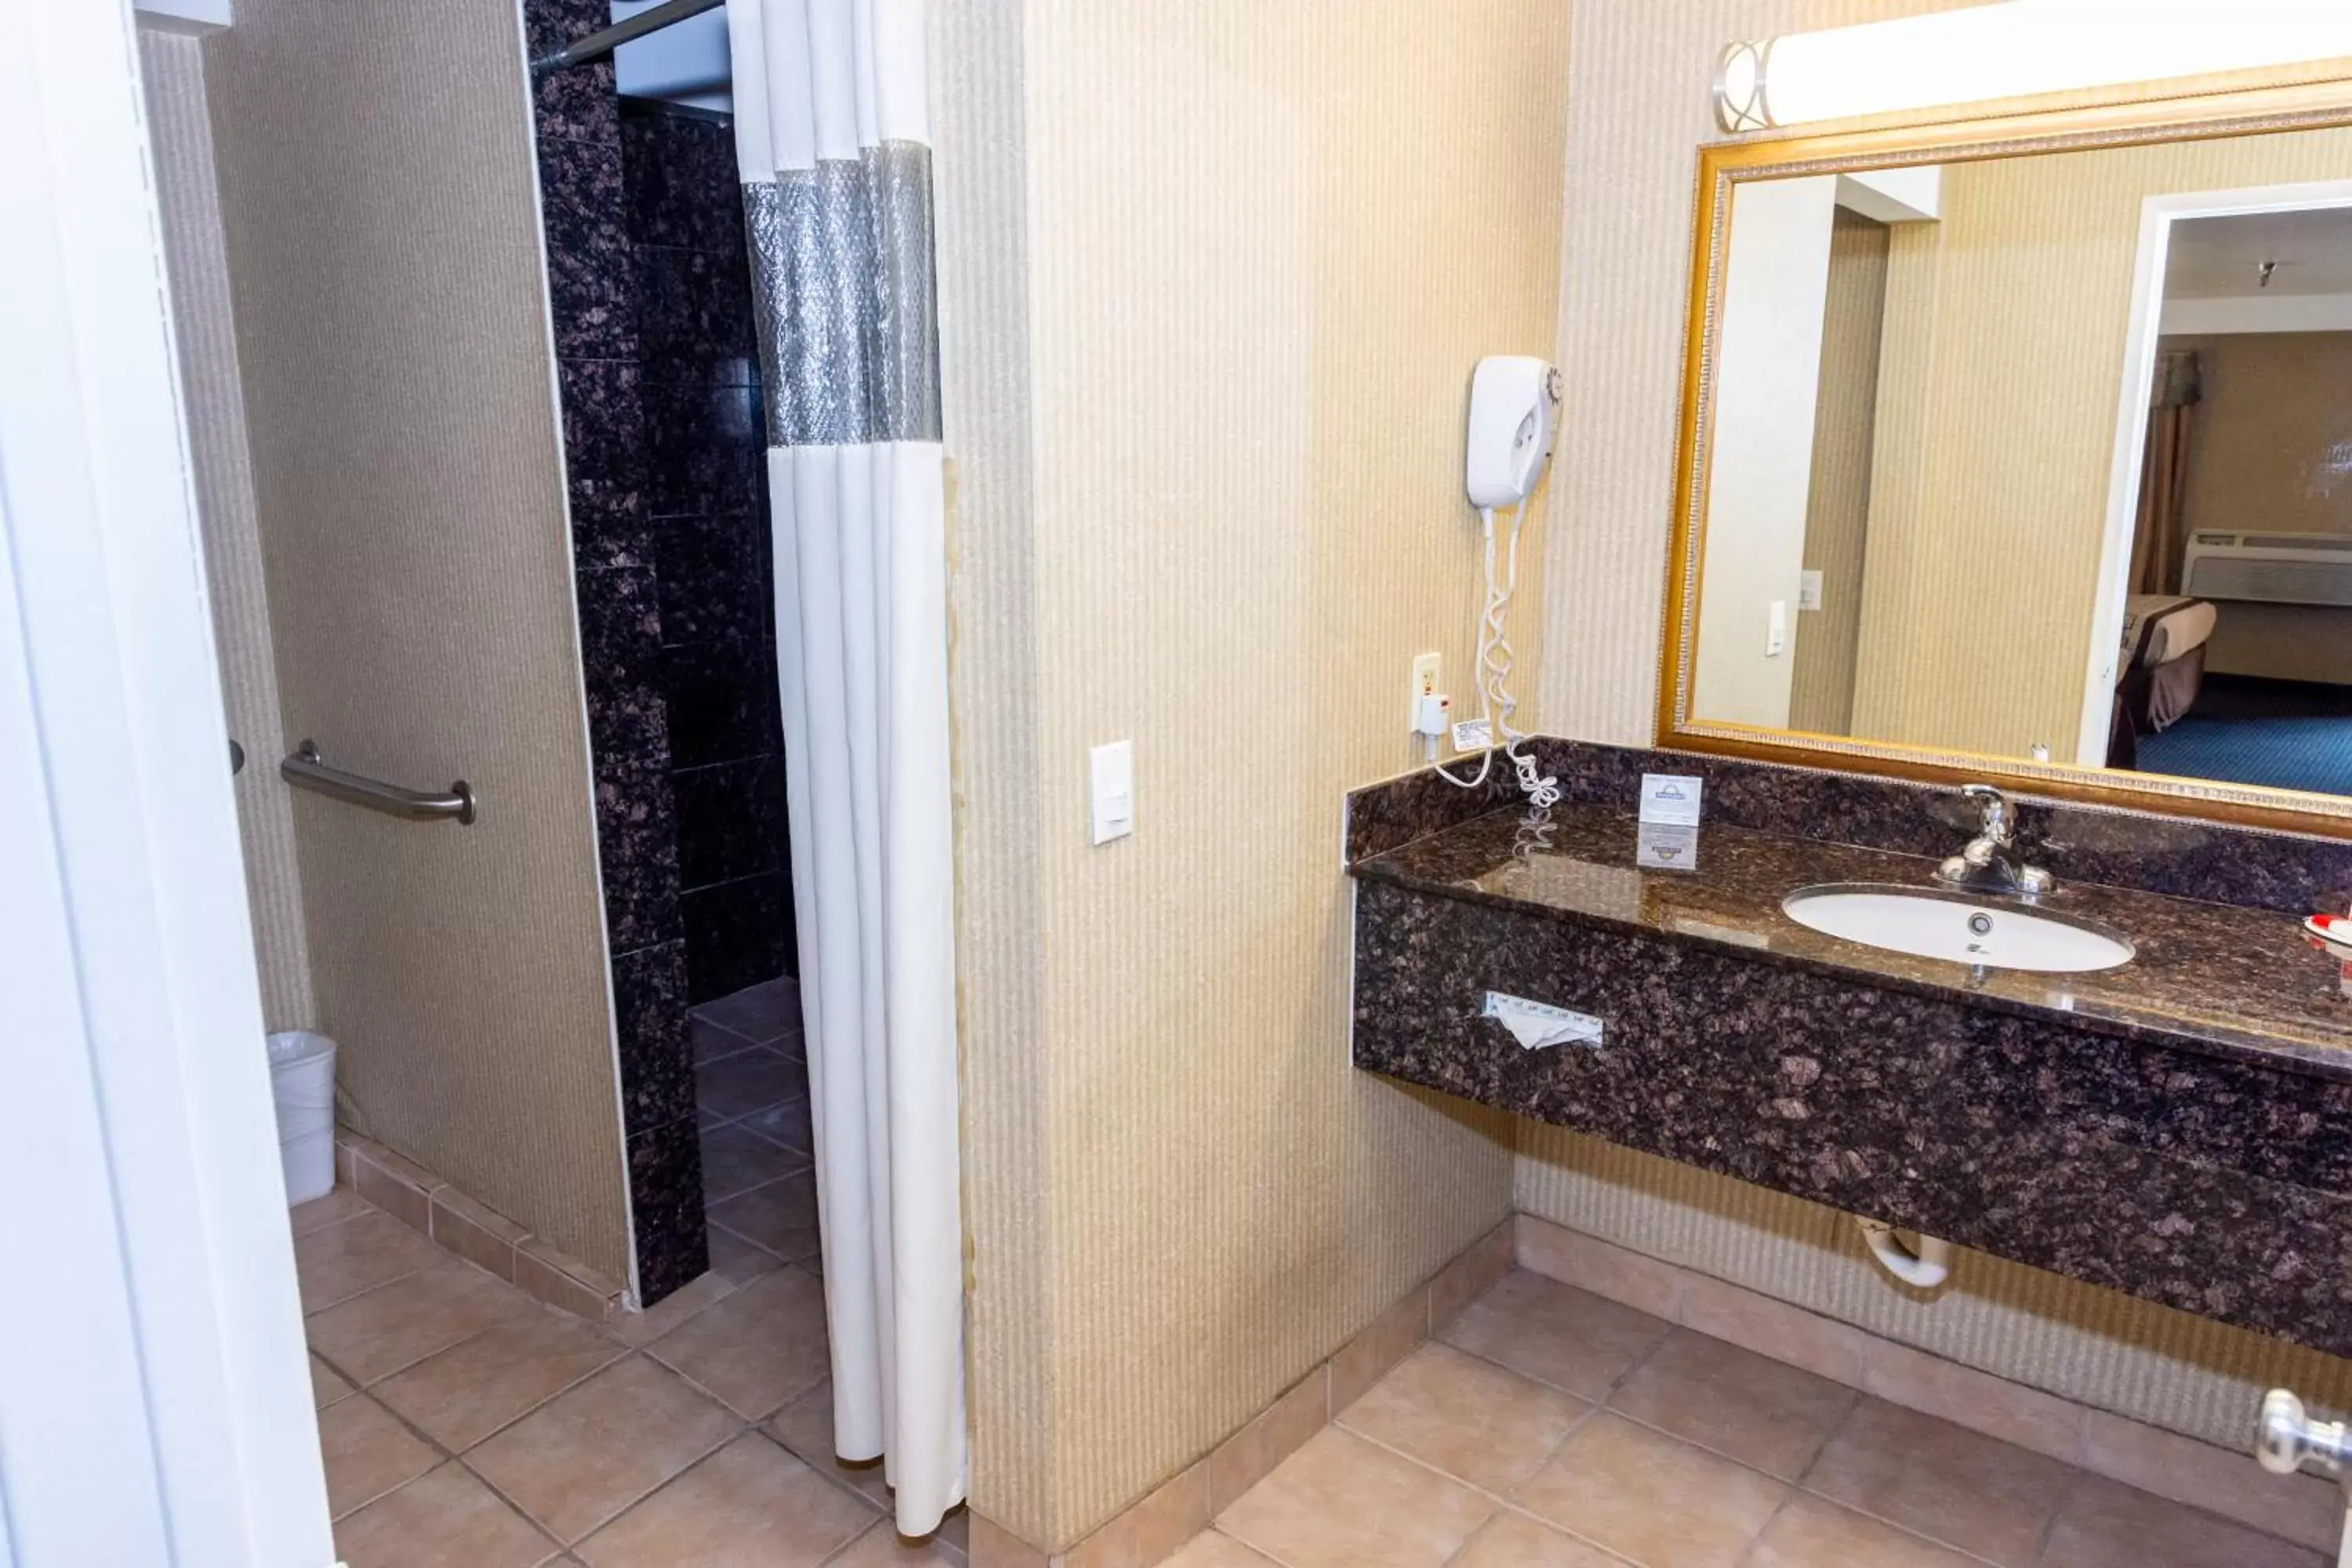 Bathroom in Days Inn & Suites by Wyndham Artesia